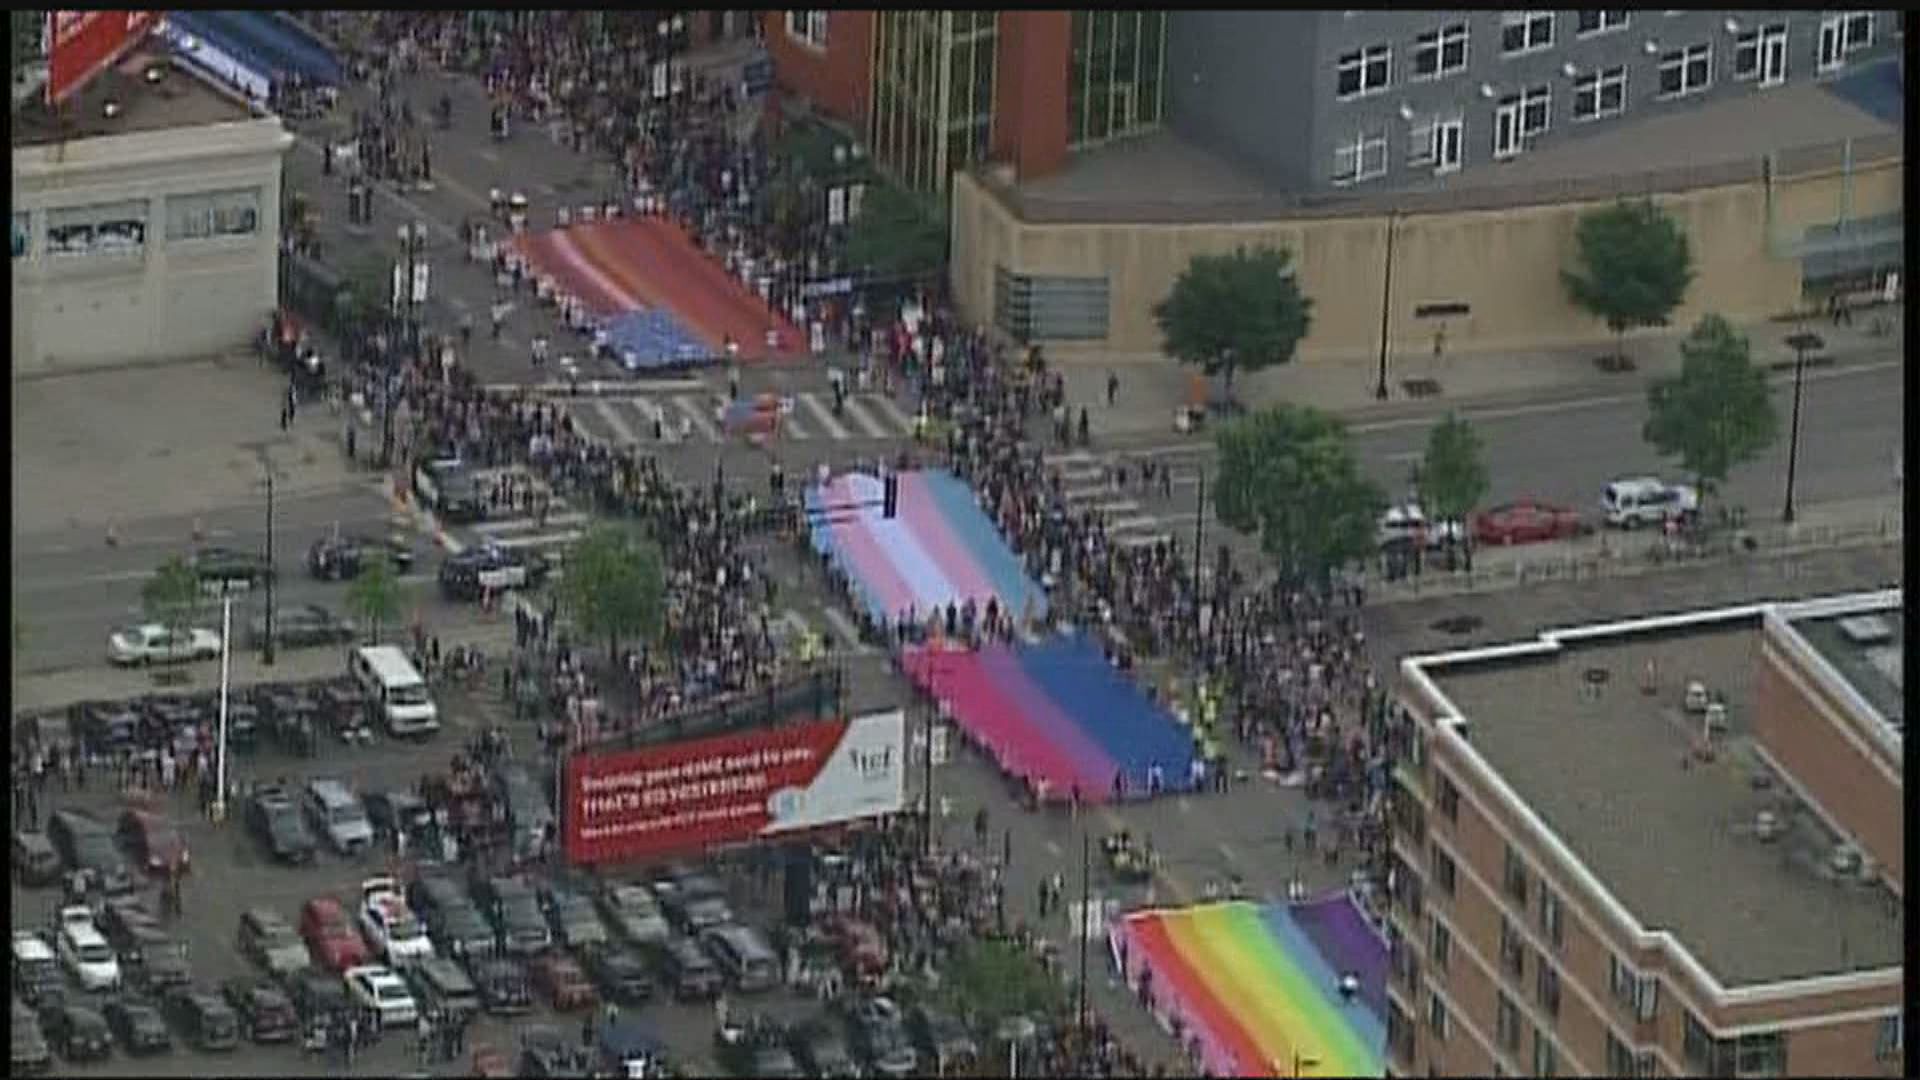 kare11.com | Pride Parade draws more than 150K in Minneapolis